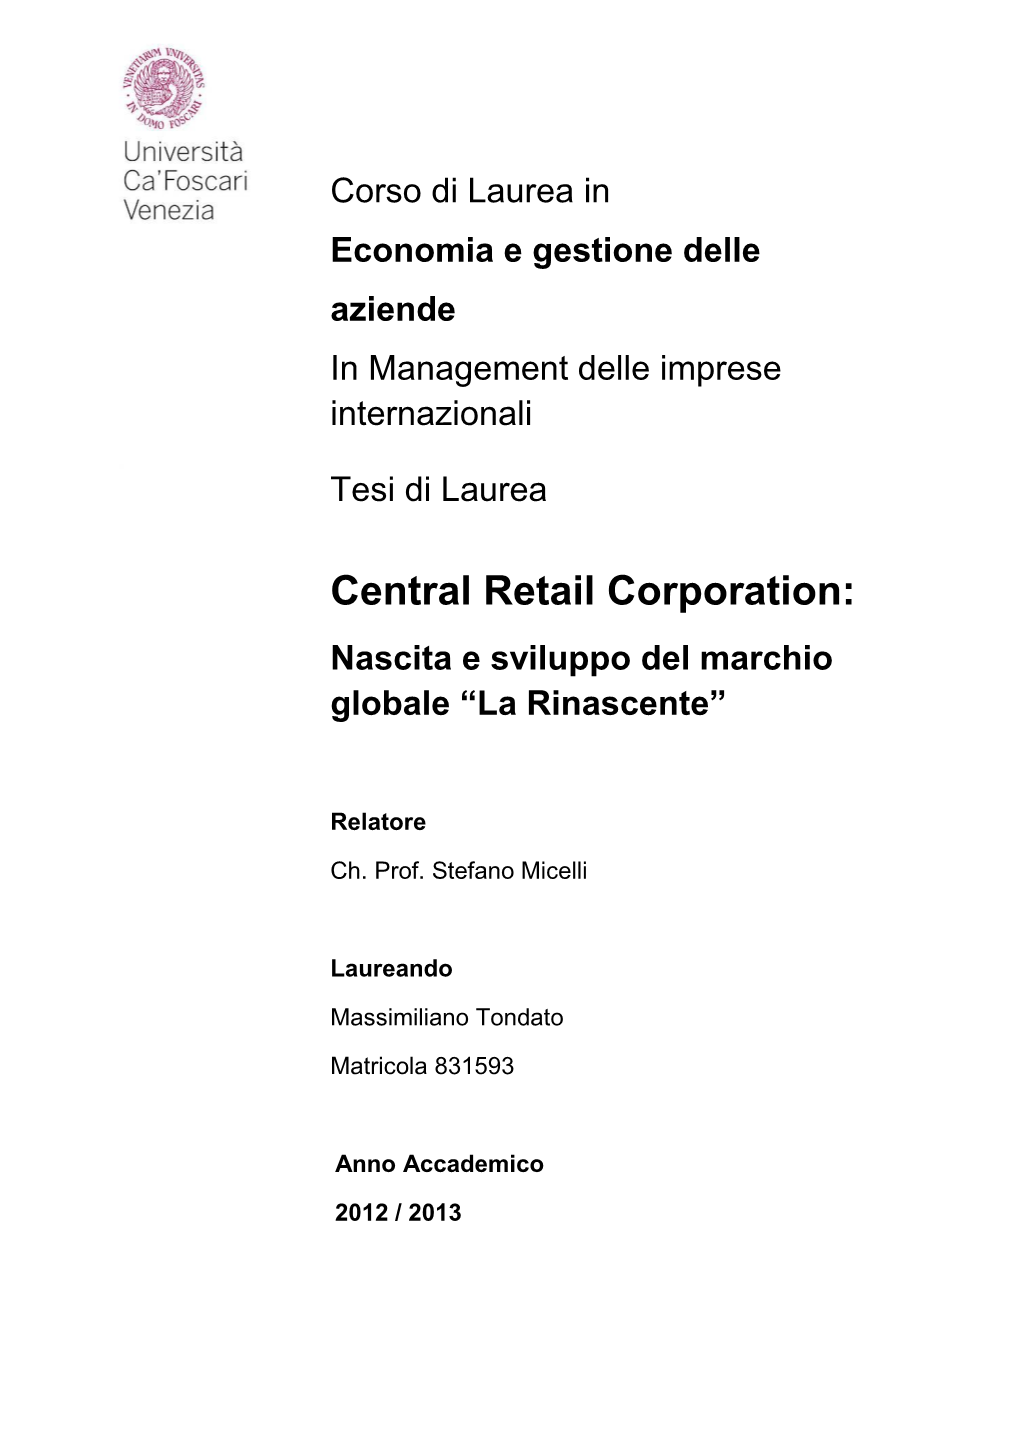 Central Retail Corporation: Nascita E Sviluppo Del Marchio Globale “La Rinascente”